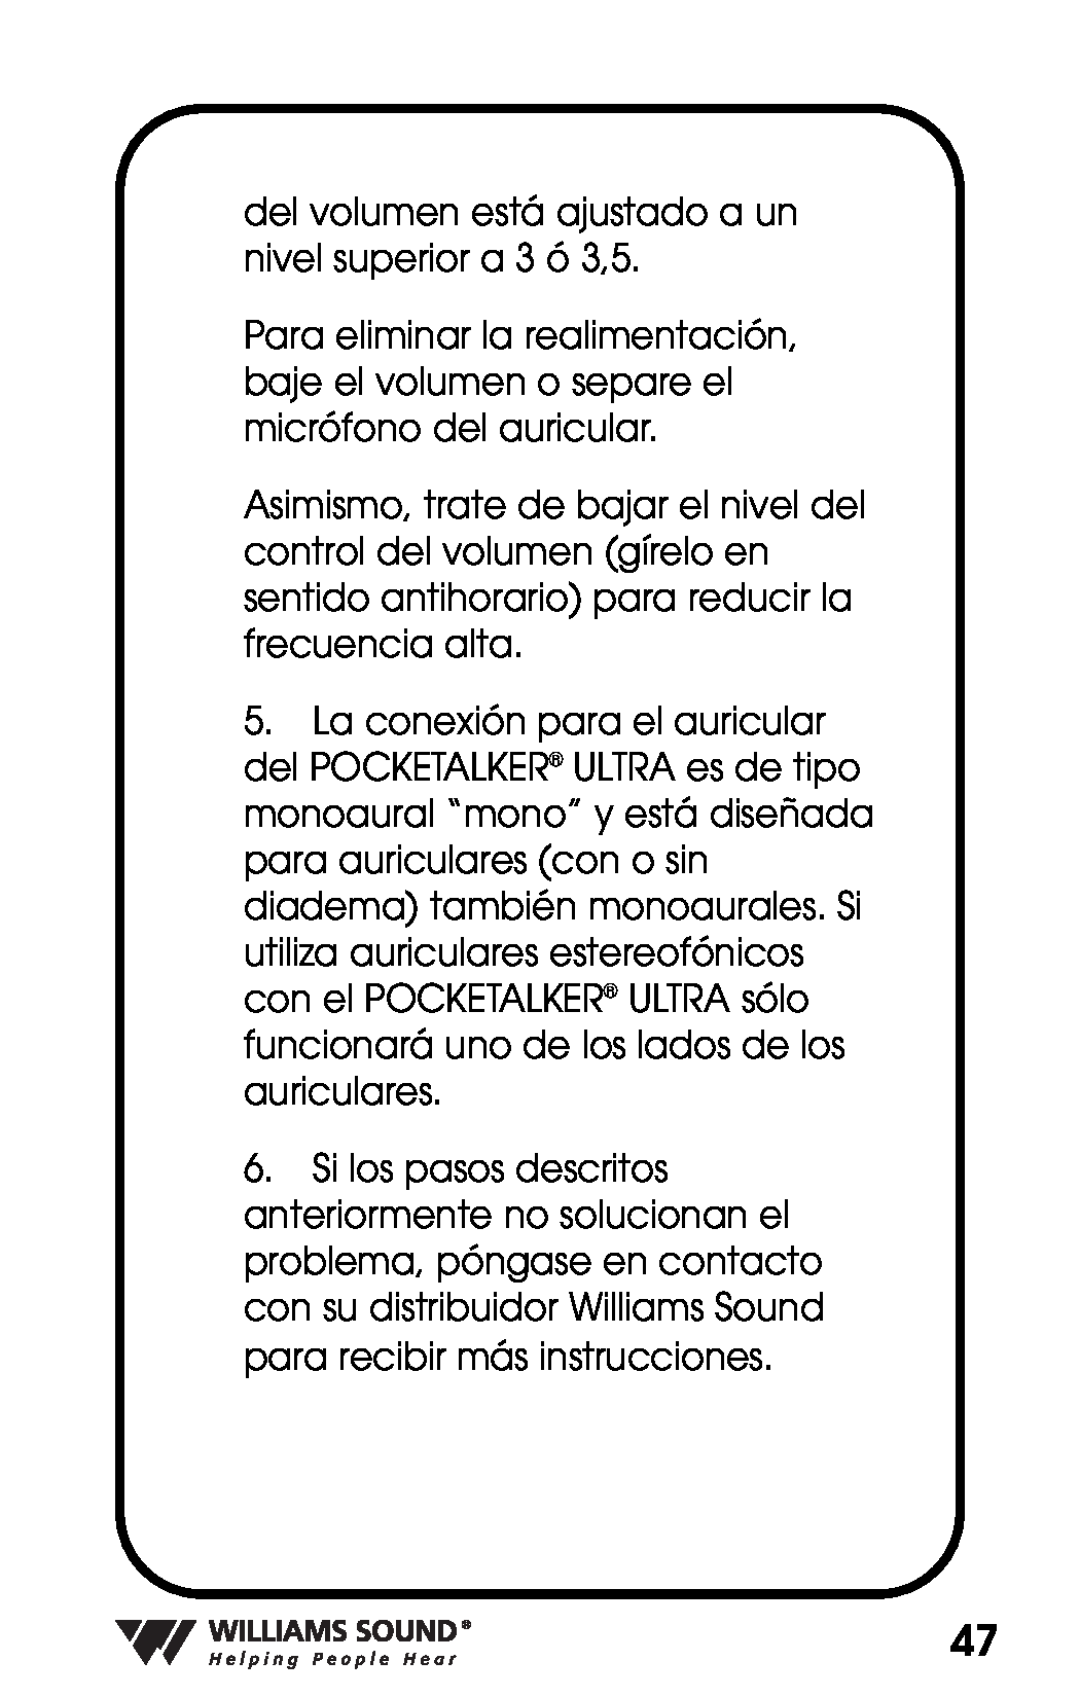 Williams Sound PKT D1 manual del volumen está ajustado a un nivel superior a 3 ó 3,5 